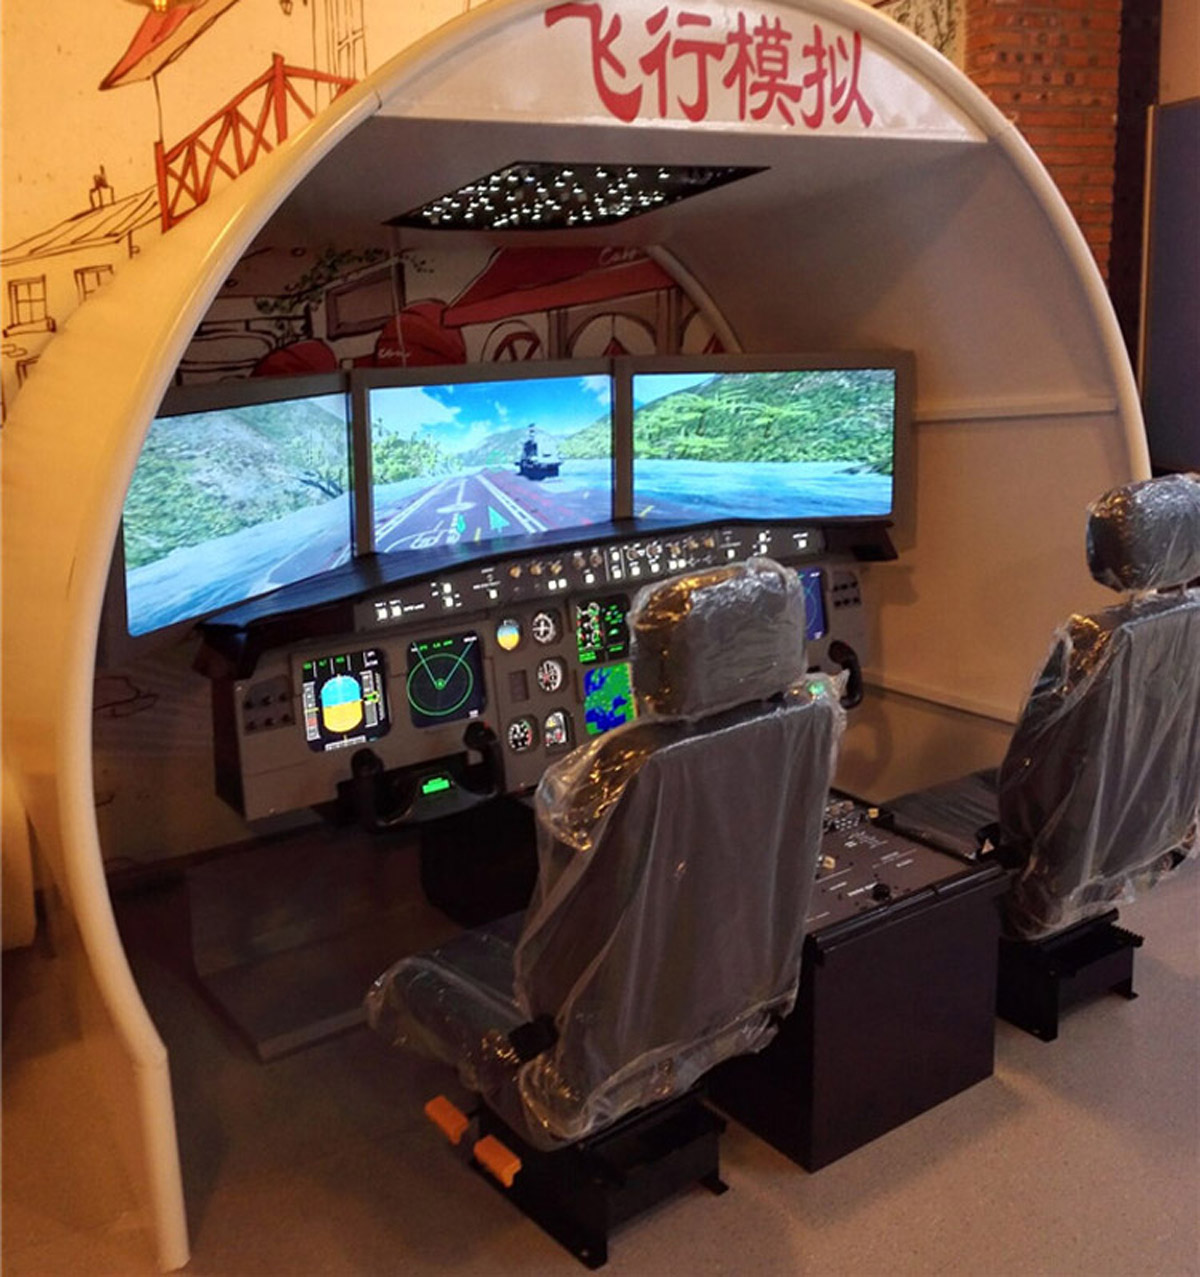 尧都区展览展示空客飞行模拟器